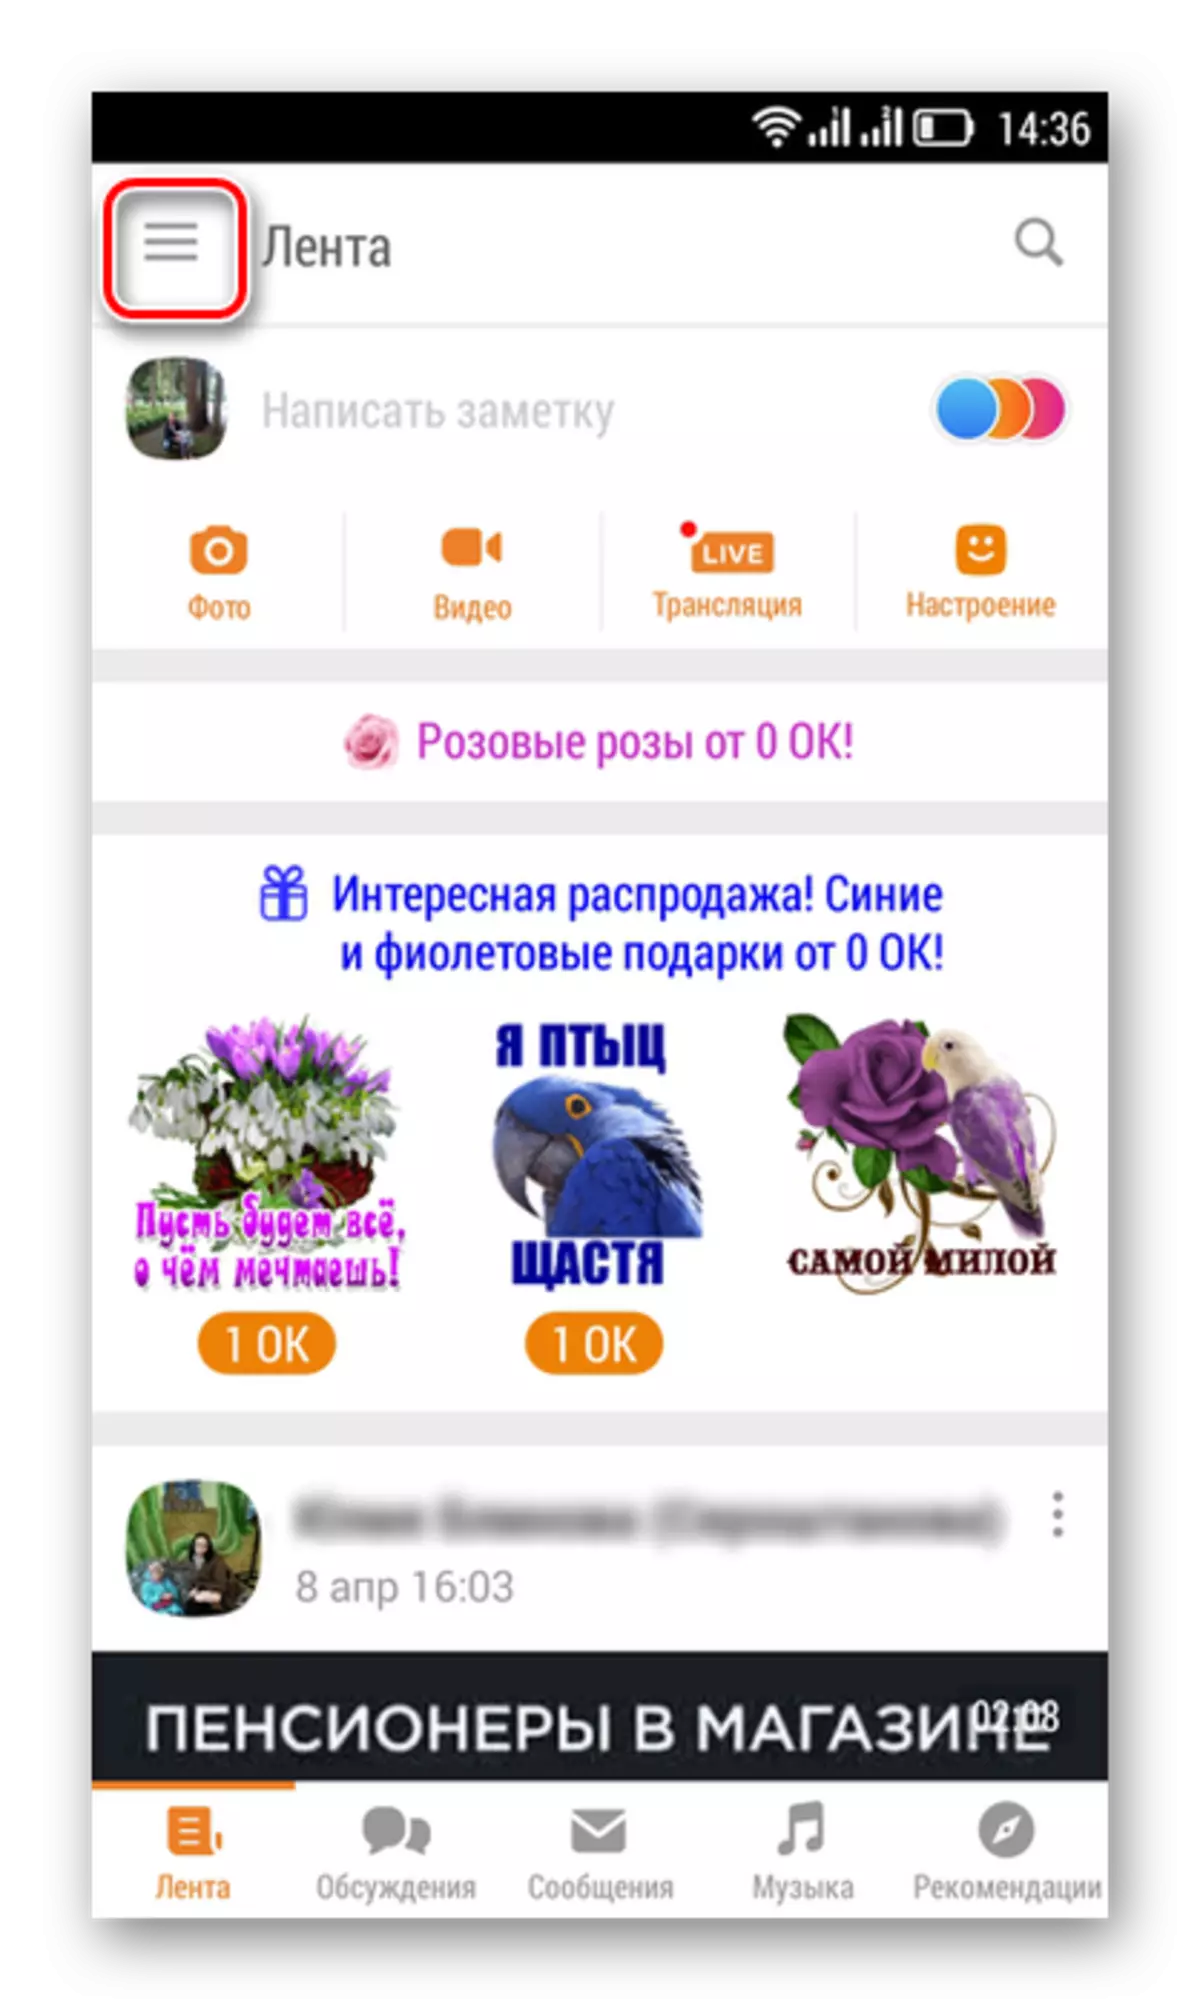 Odnoklassniki માં મેનુમાં પ્રવેશ કરો